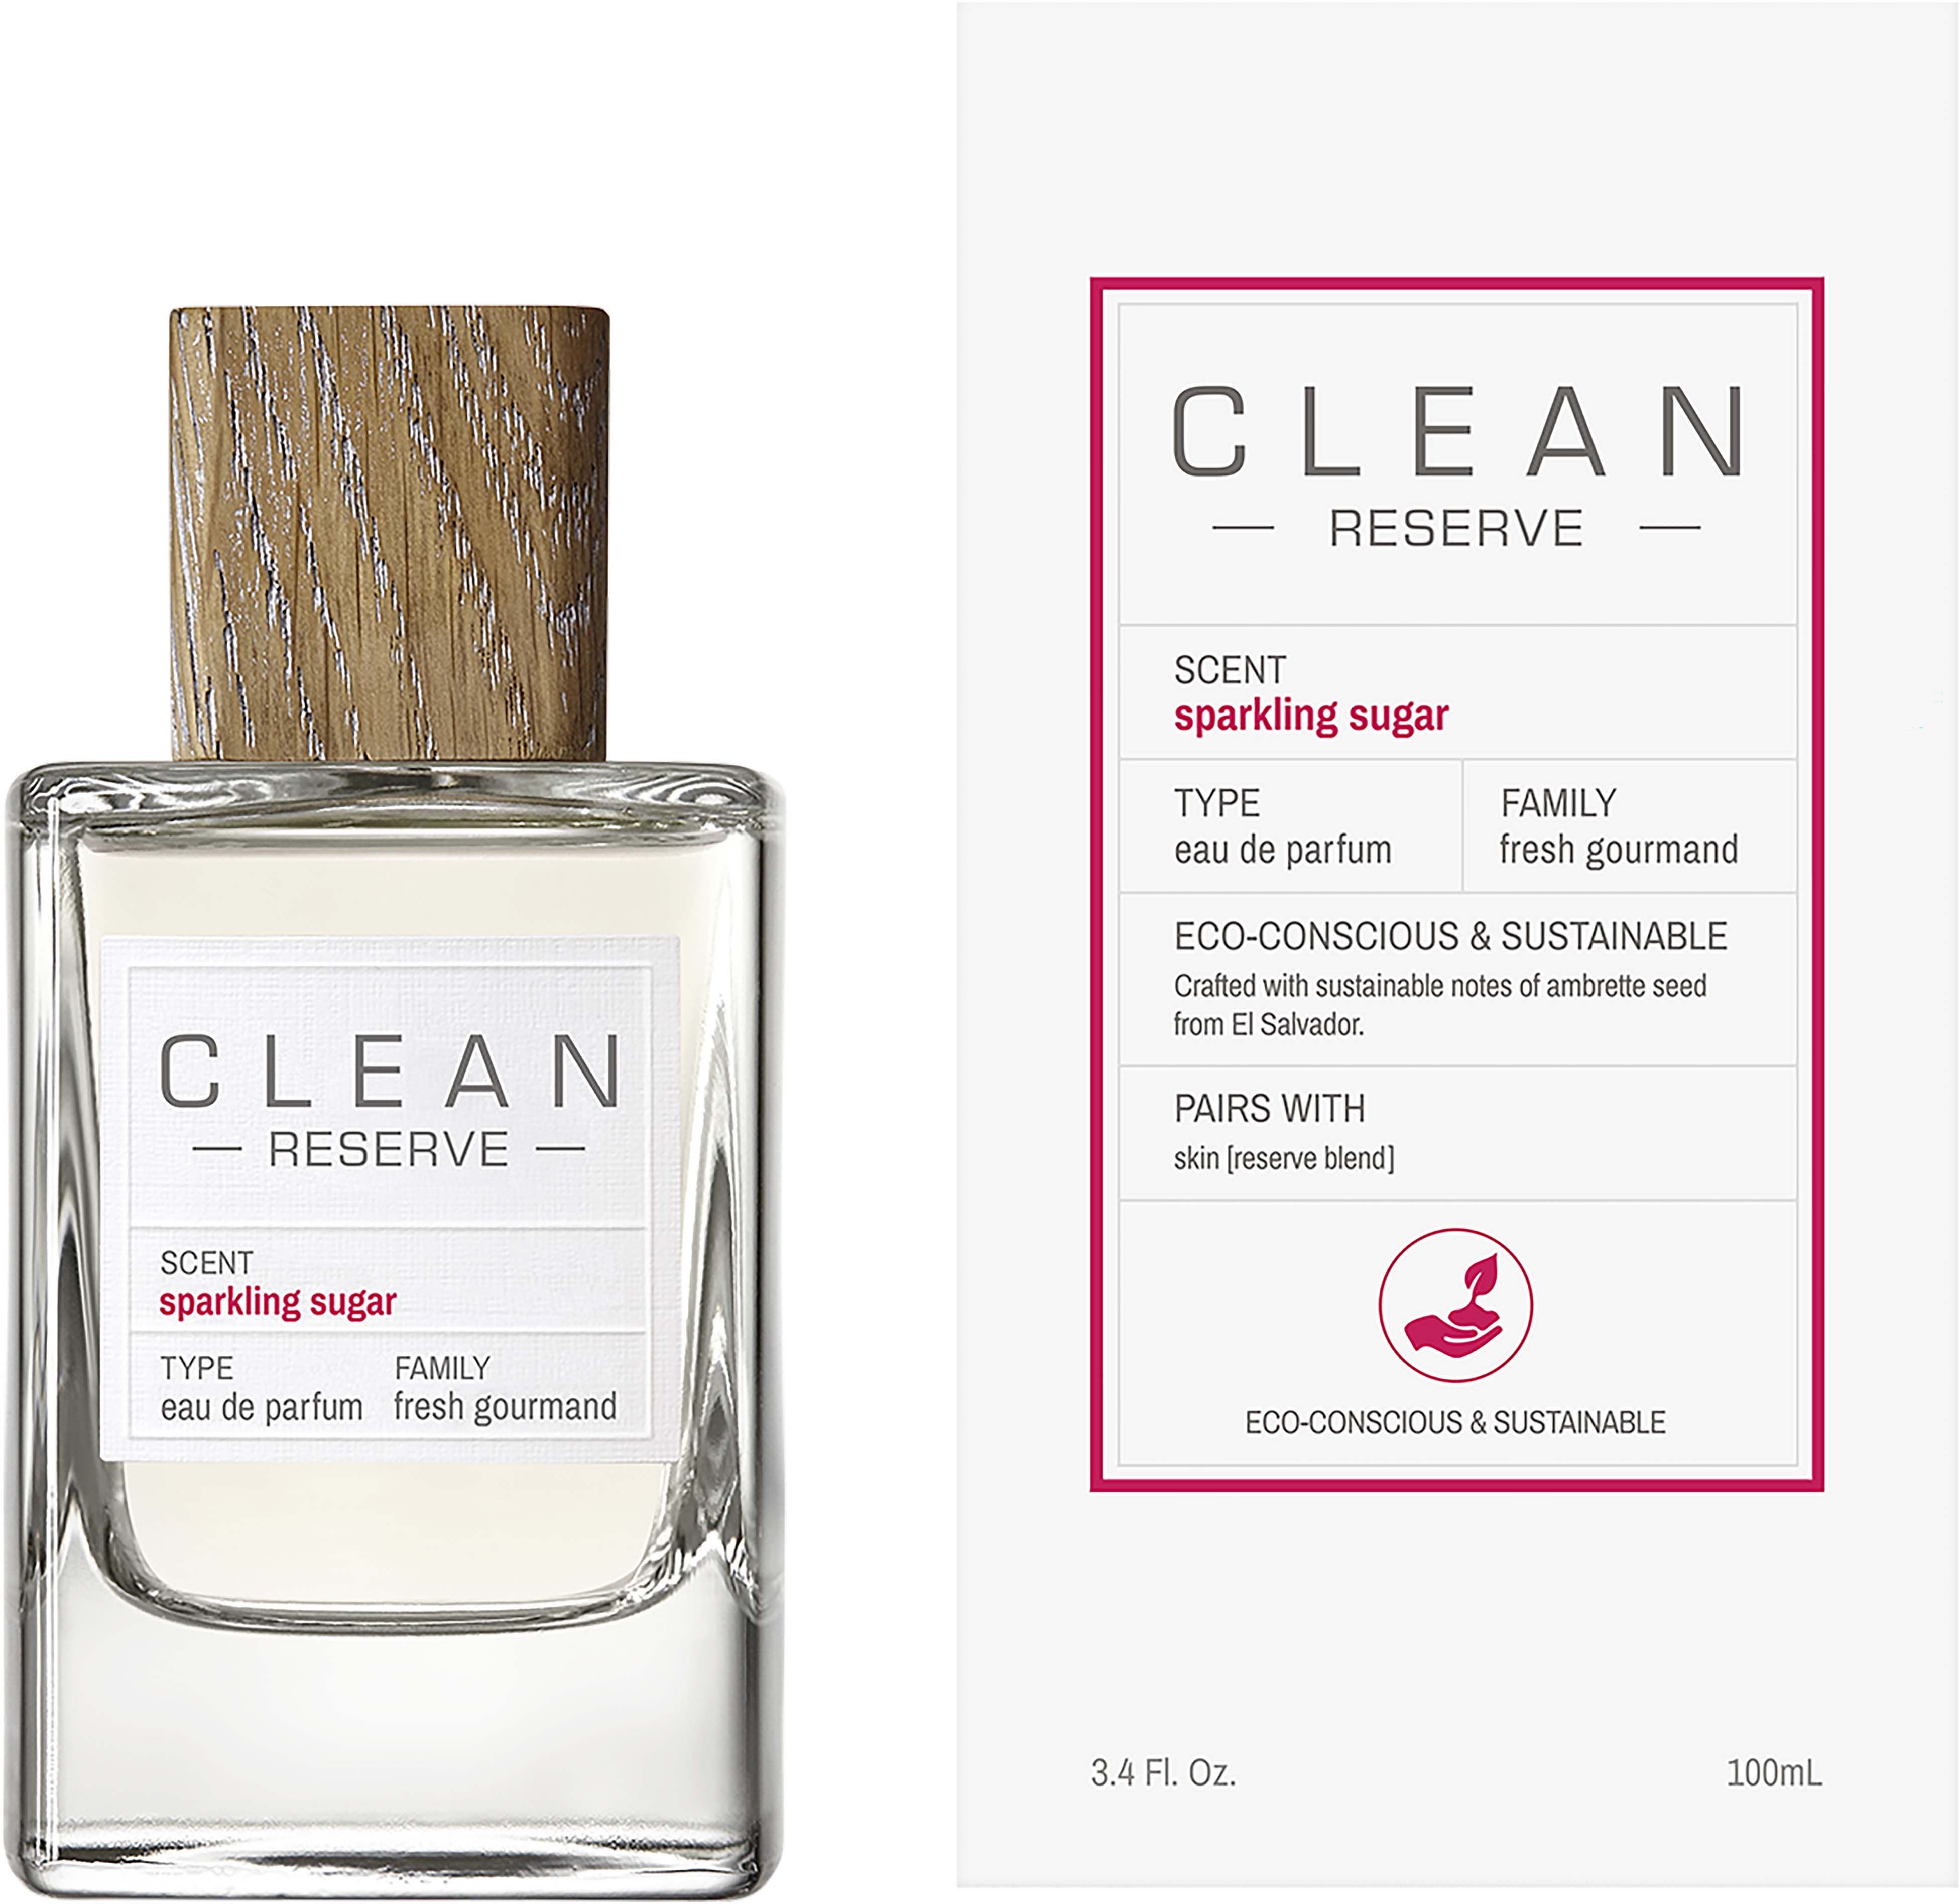 clean clean reserve - sparkling sugar woda perfumowana 100 ml   